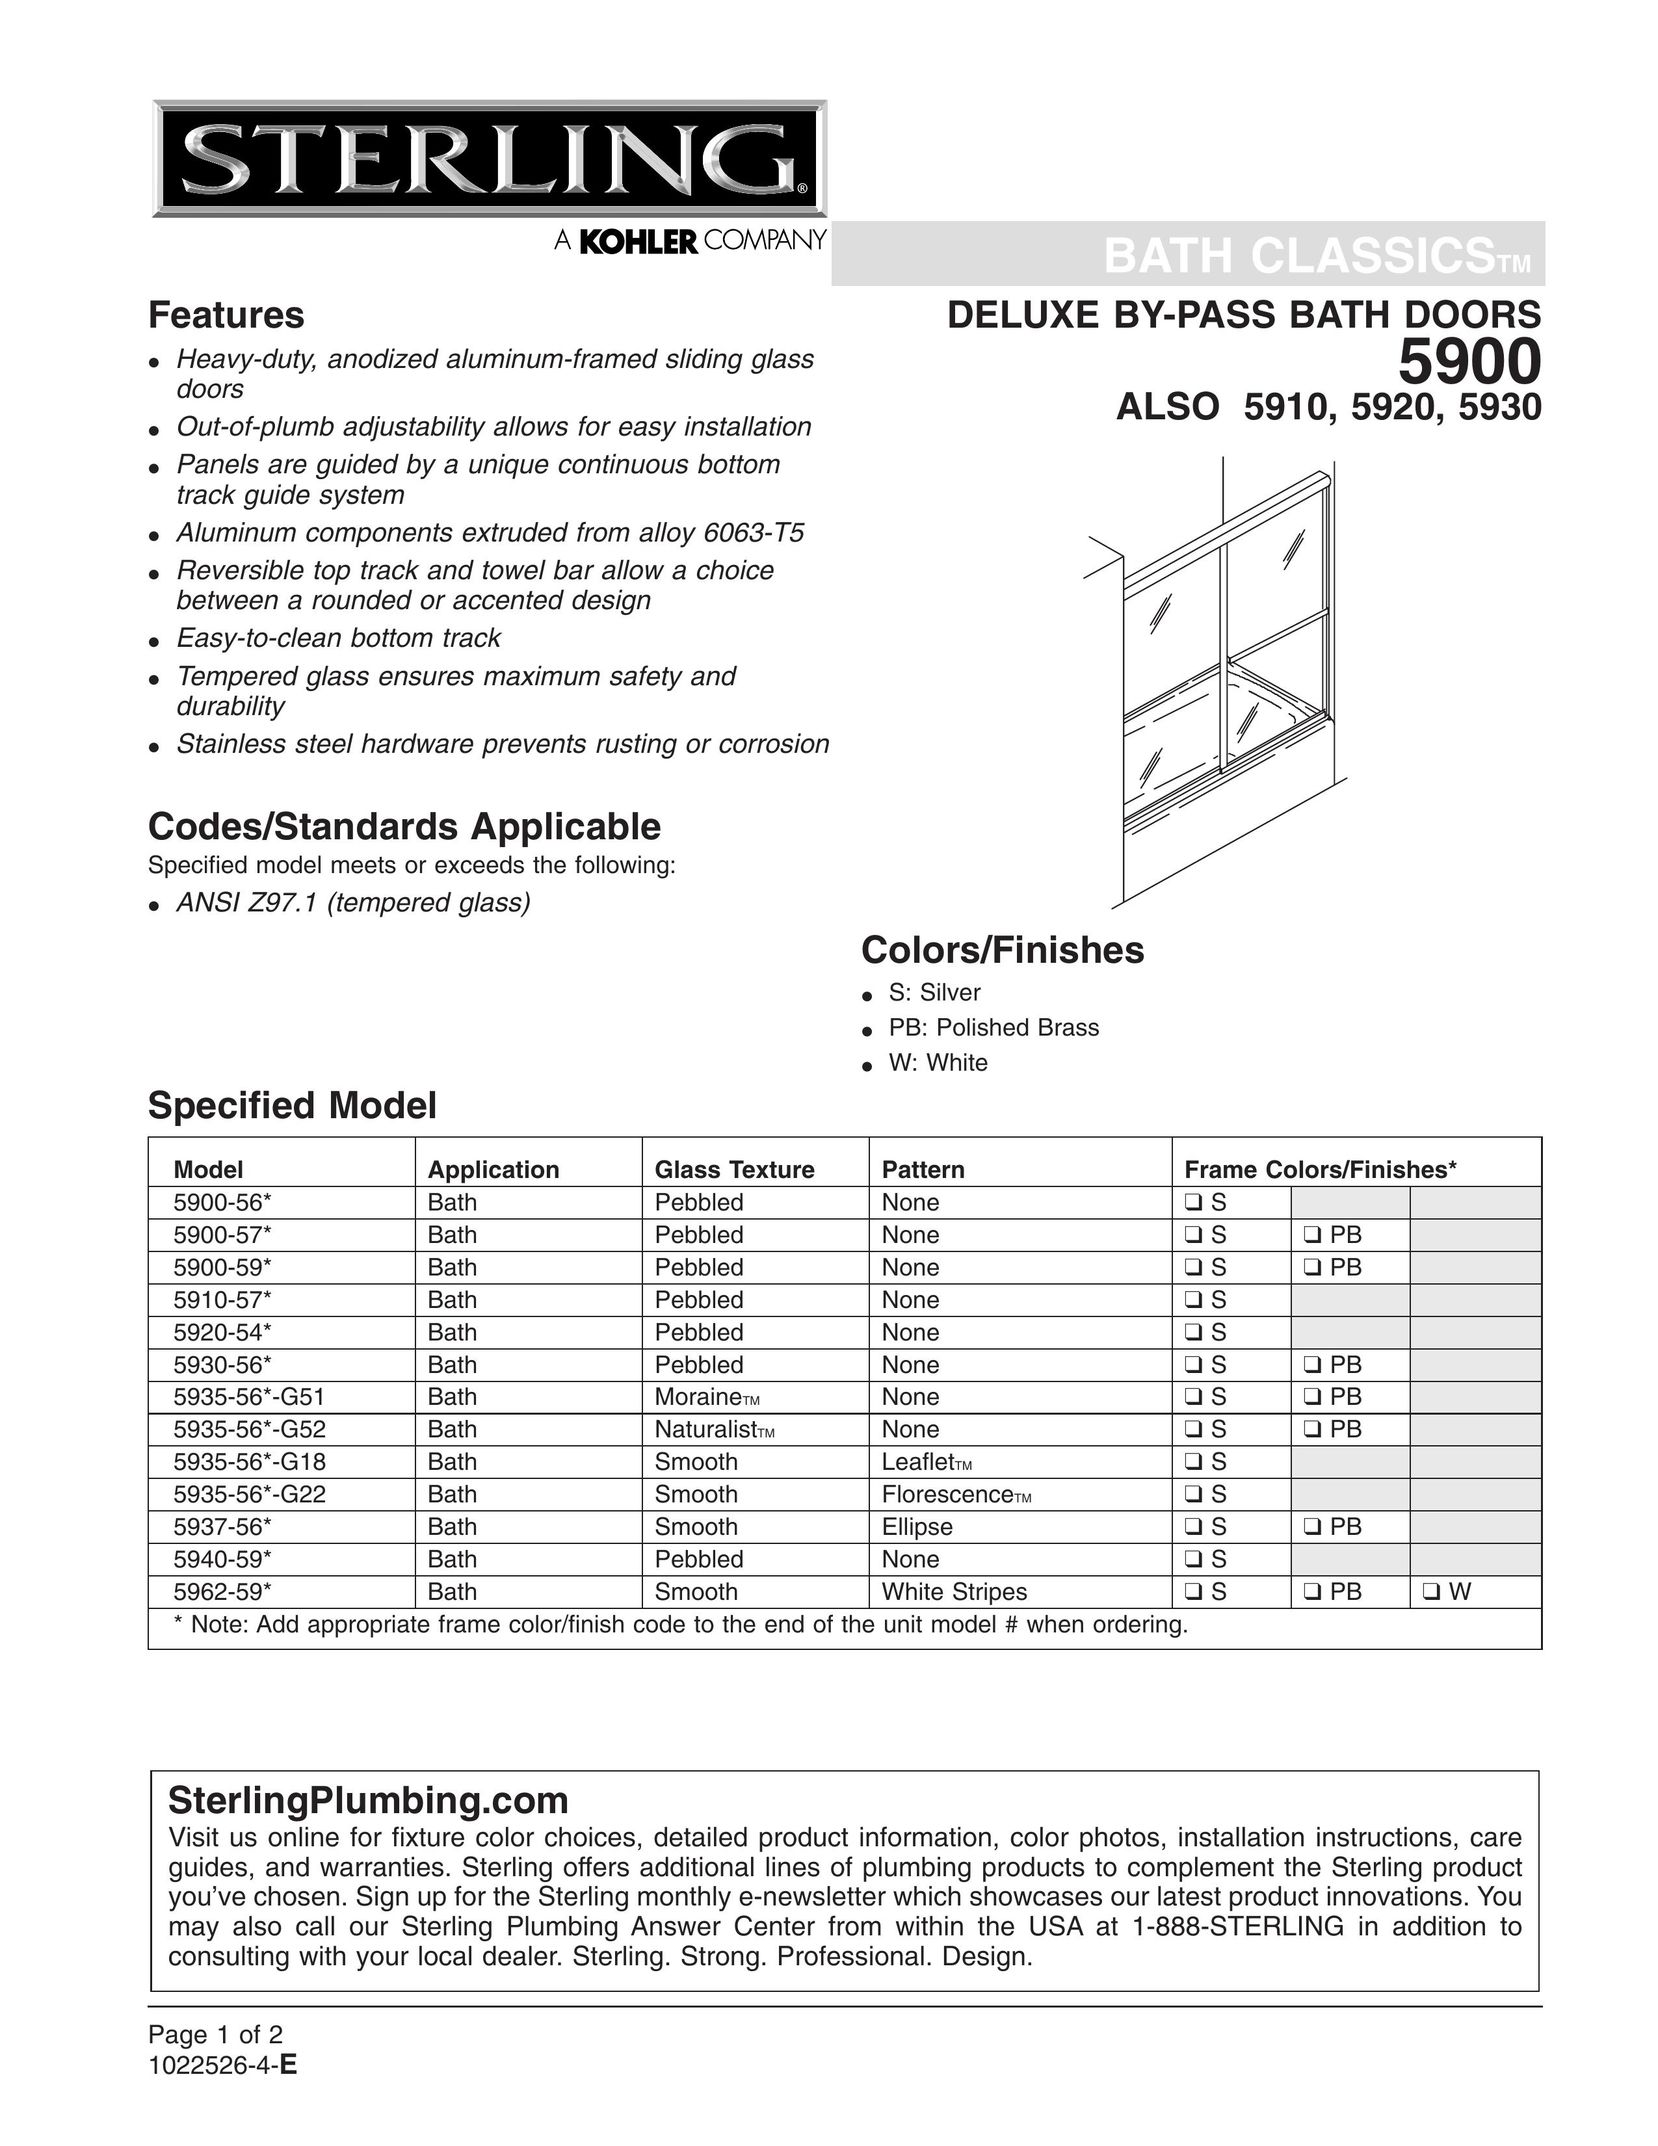 Sterling Plumbing 5900-56* Door User Manual